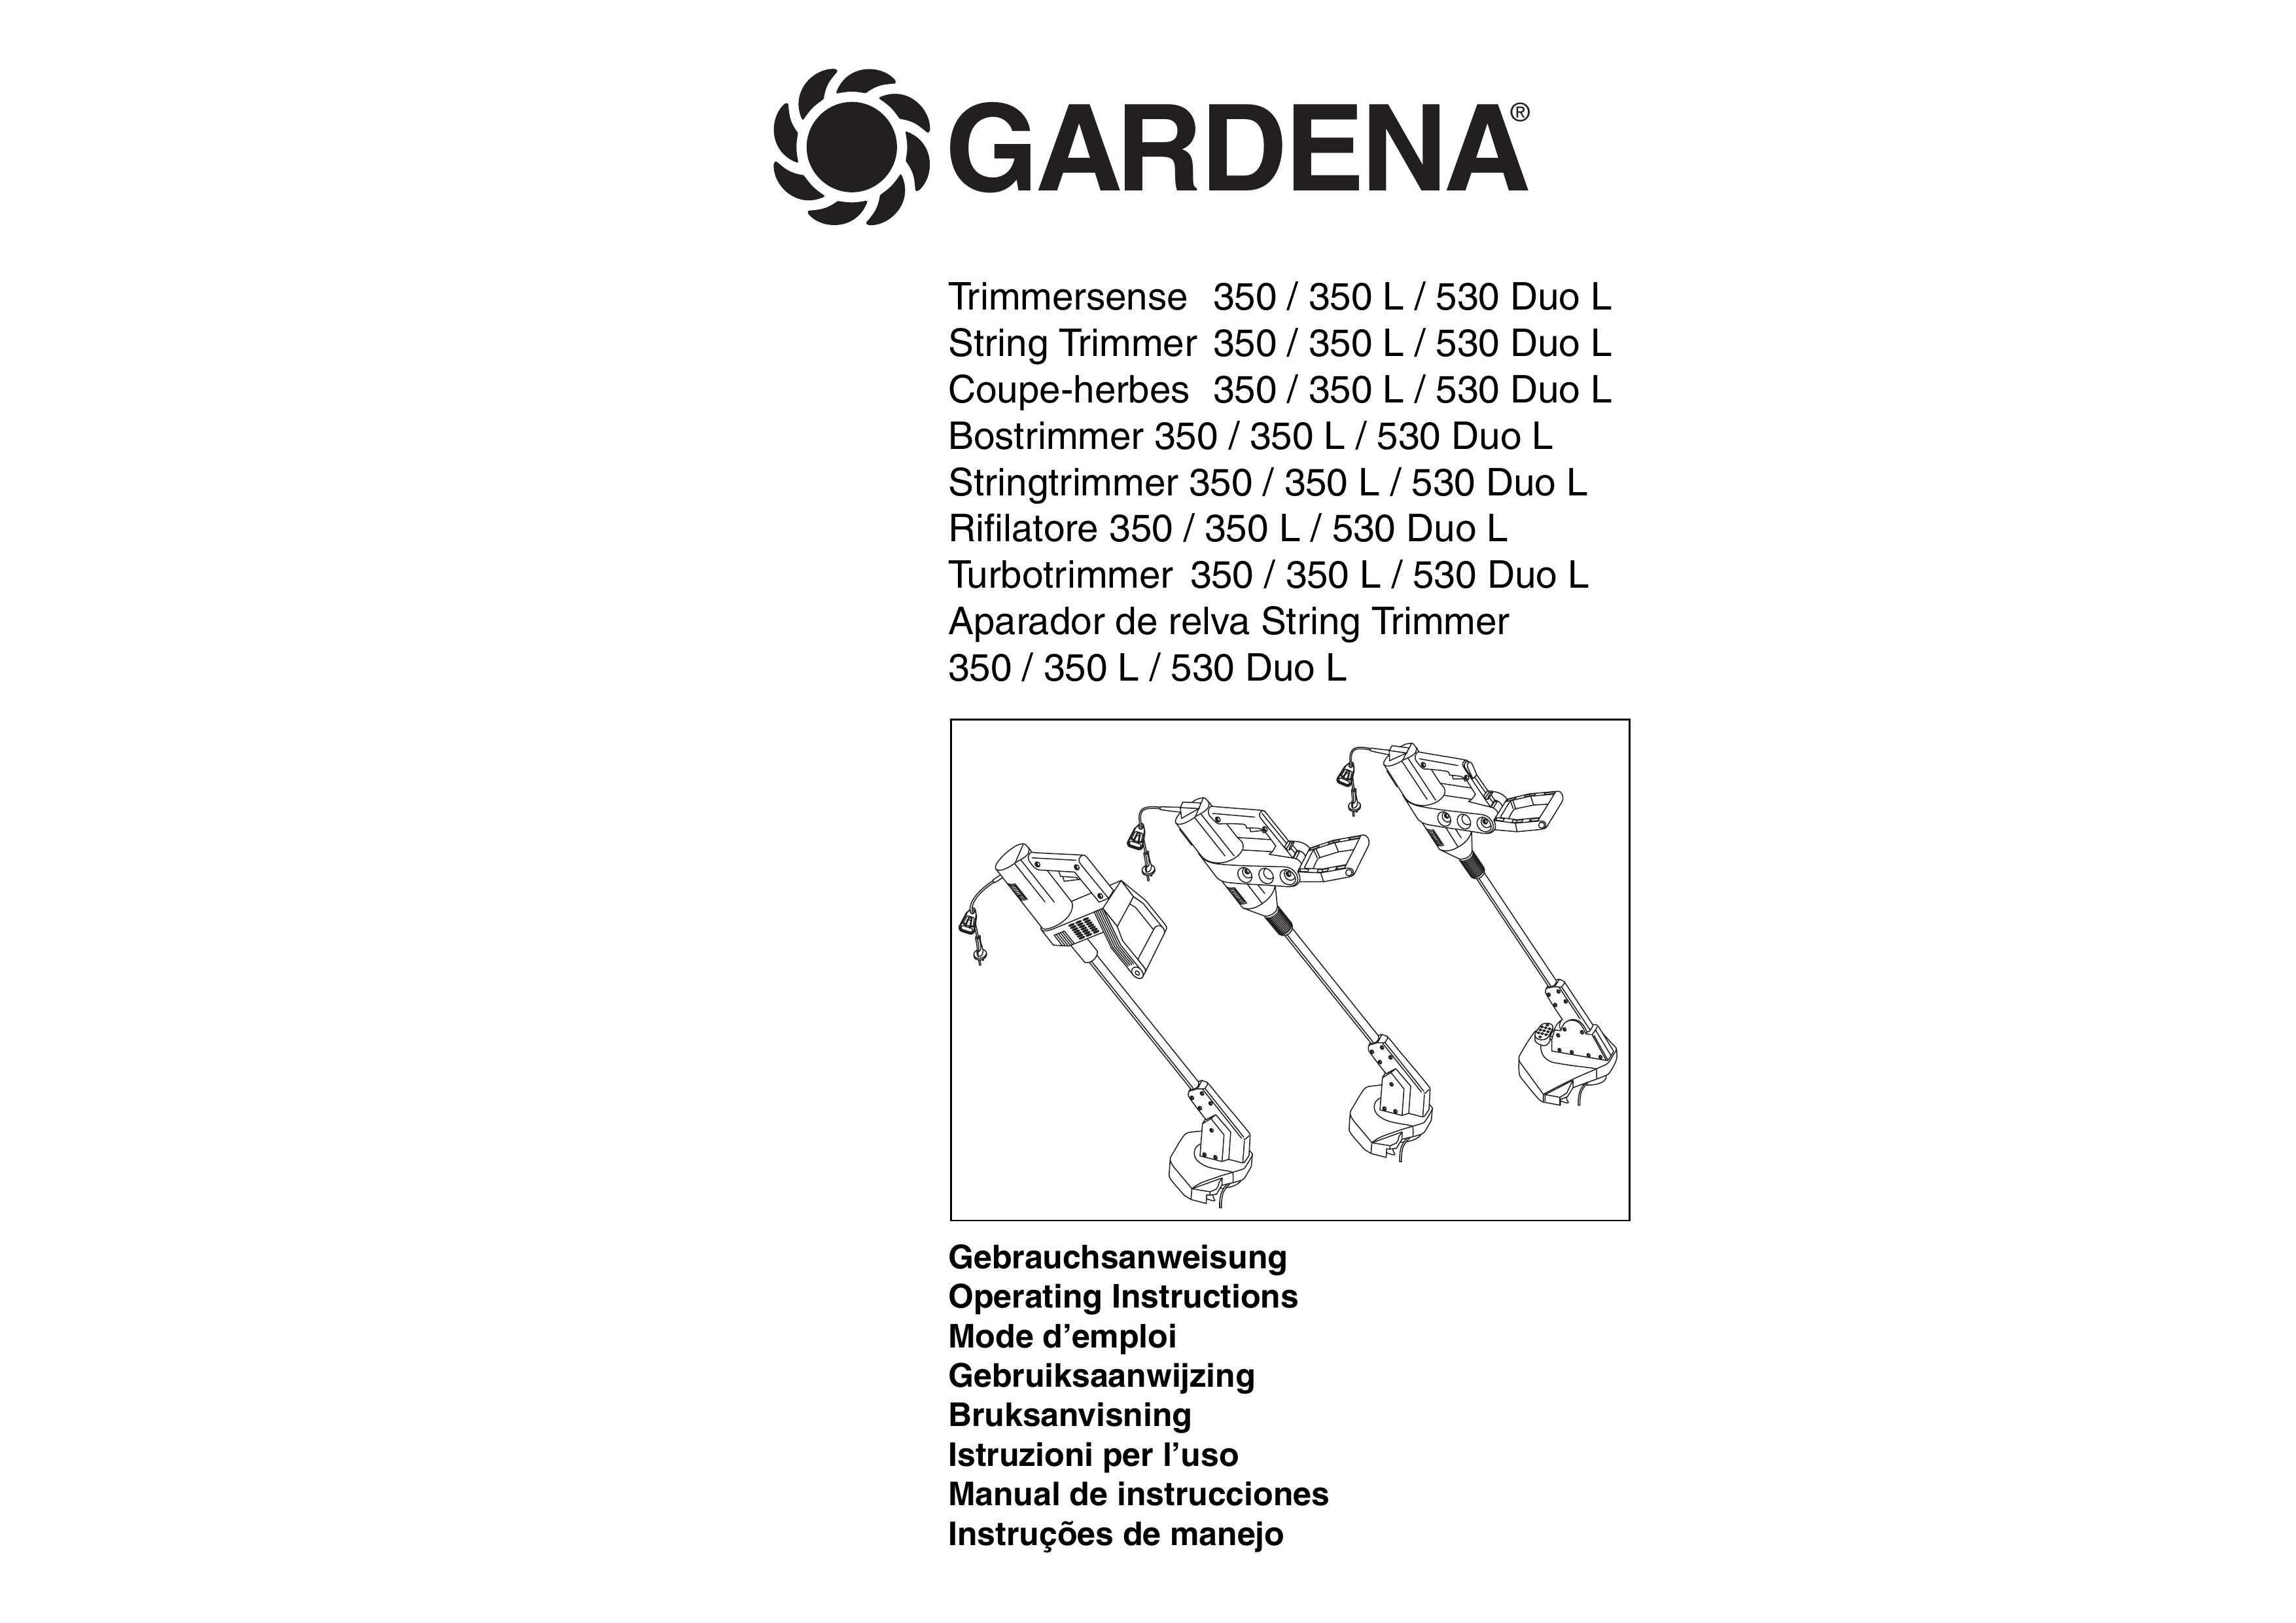 Gardena TS 530 Duo L Trimmer User Manual